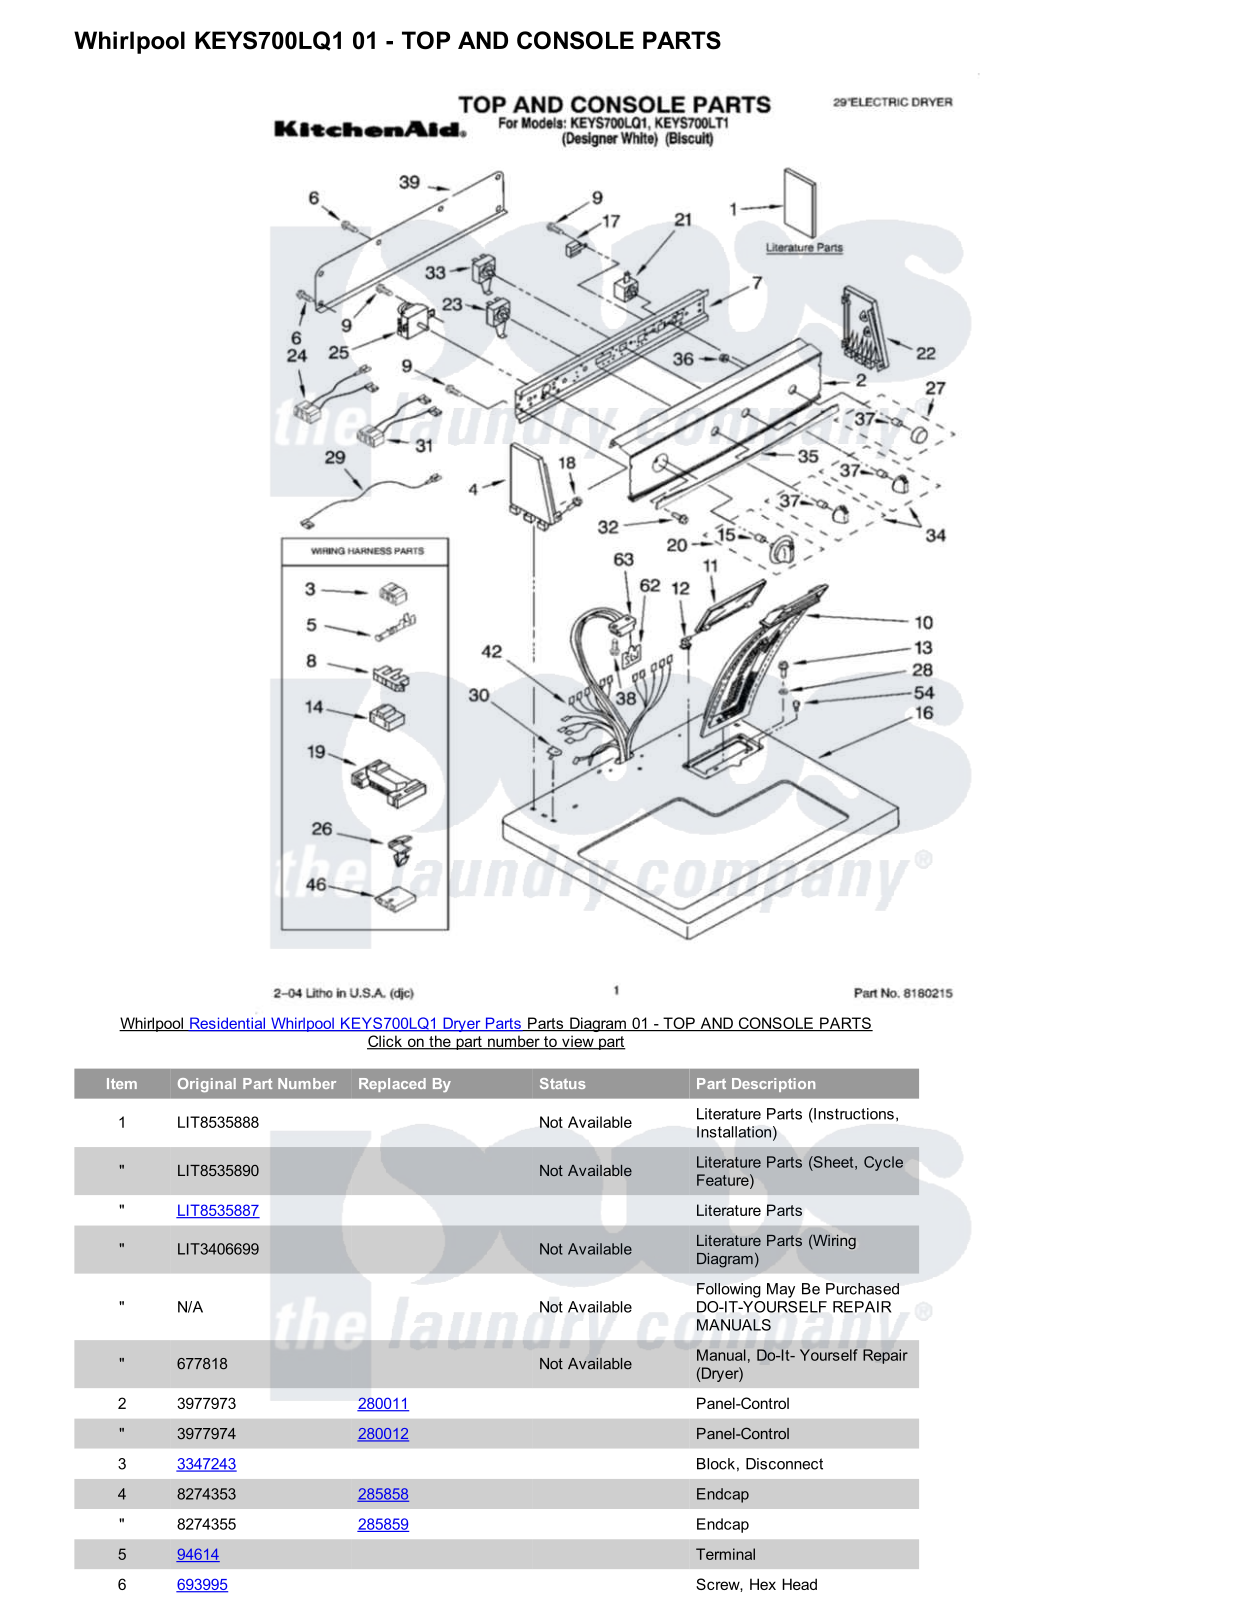 Whirlpool KEYS700LQ1 Parts Diagram